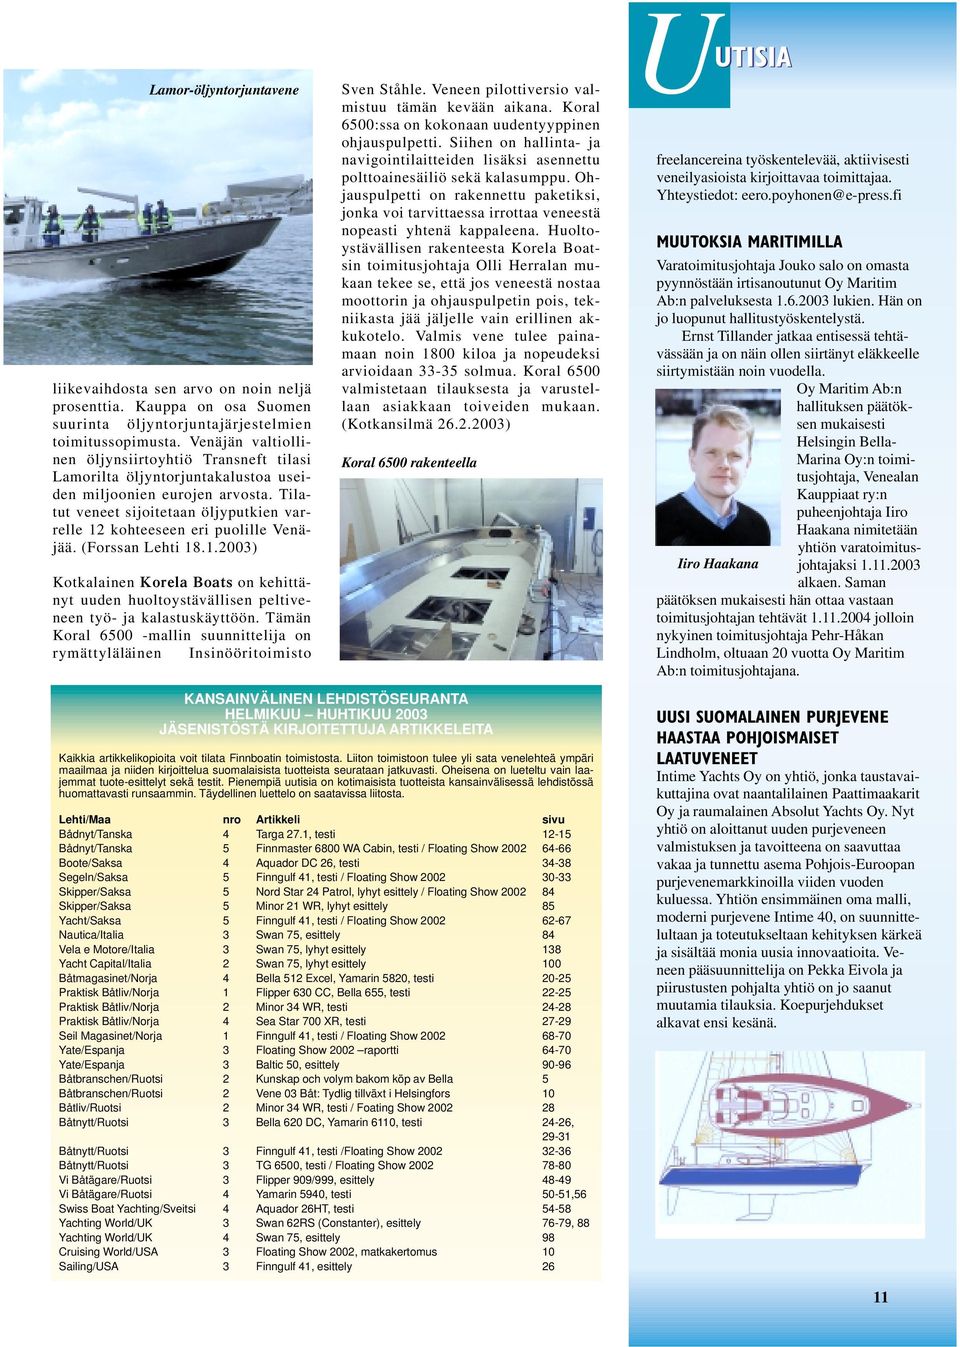 Tilatut veneet sijoitetaan öljyputkien varrelle 12 kohteeseen eri puolille Venäjää. (Forssan Lehti 18.1.2003) Kotkalainen Korela Boats on kehittänyt uuden huoltoystävällisen peltiveneen työ- ja kalastuskäyttöön.